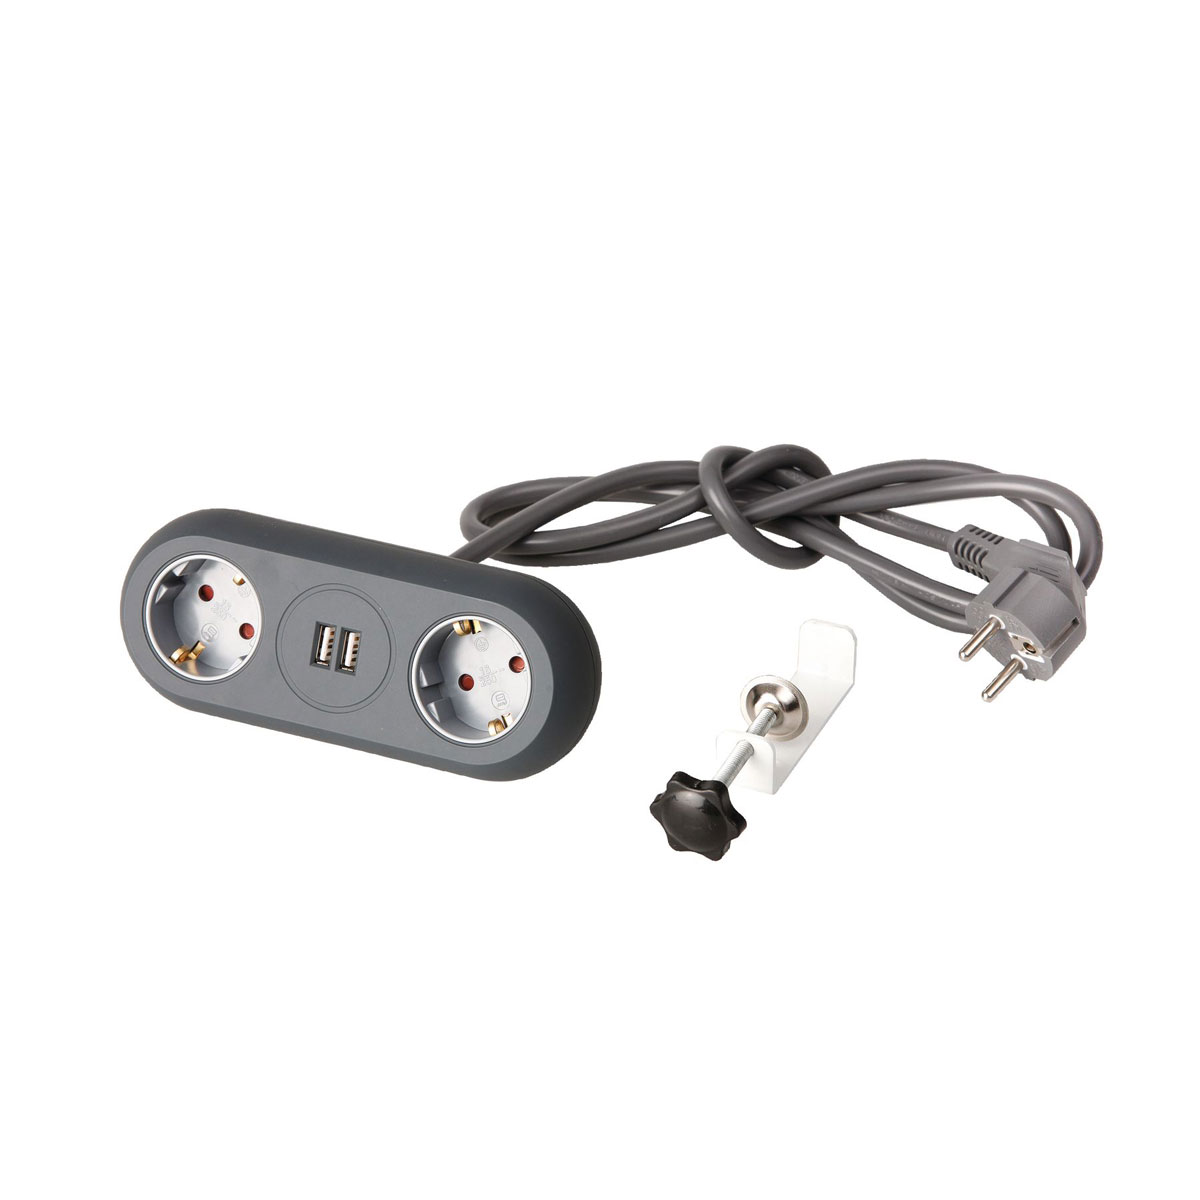 REV Ritter Steckdosenleiste Lightsocket LED-3+2-fach USB 10 lm 6500 K  Schwarz kaufen bei OBI